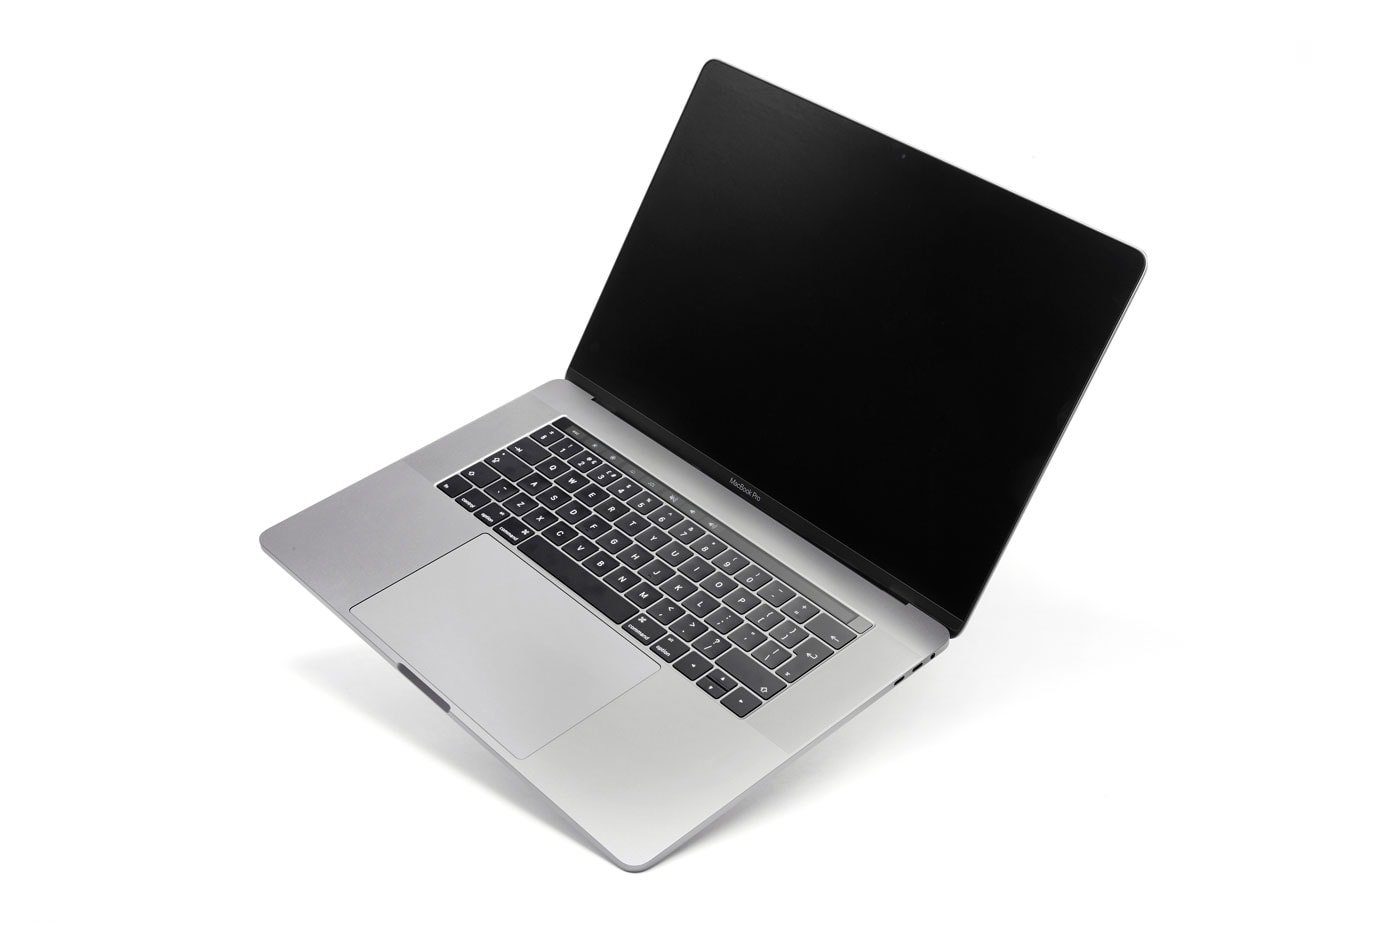 Apple MacBook Pro Full Spec 6000 USD Price Tag 8TB SSD Storage